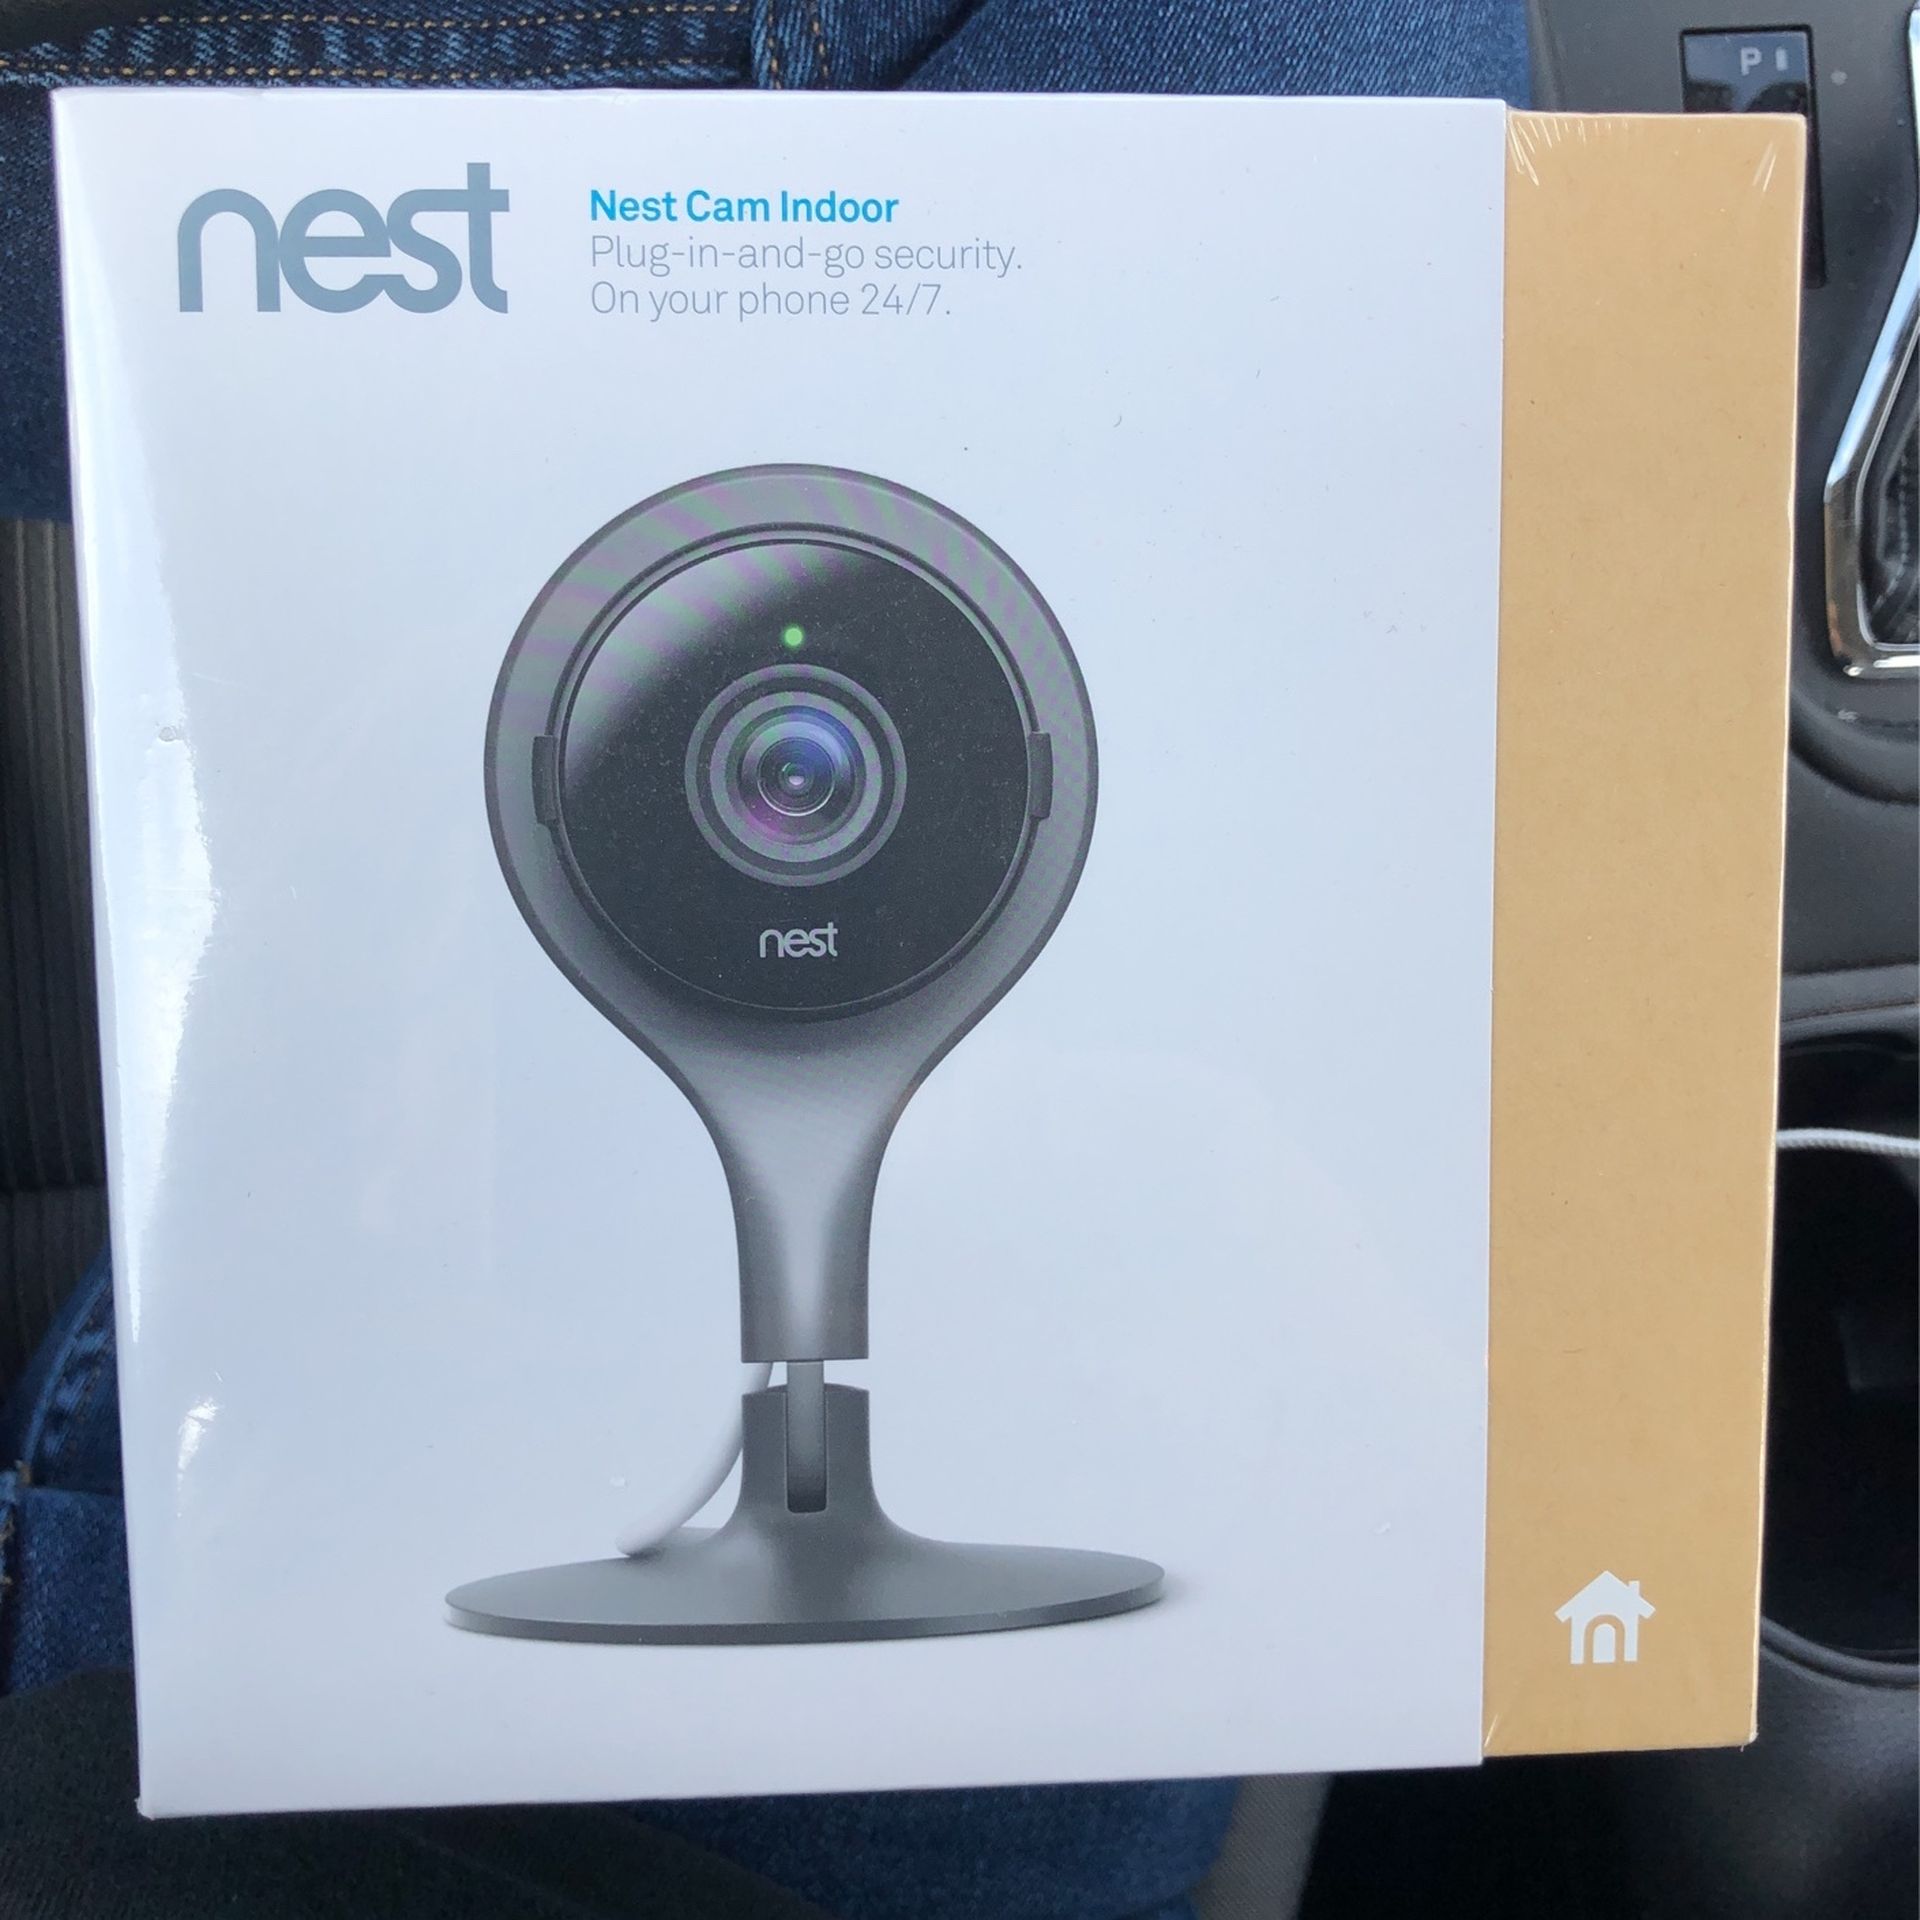 3 Nest Security Cameras